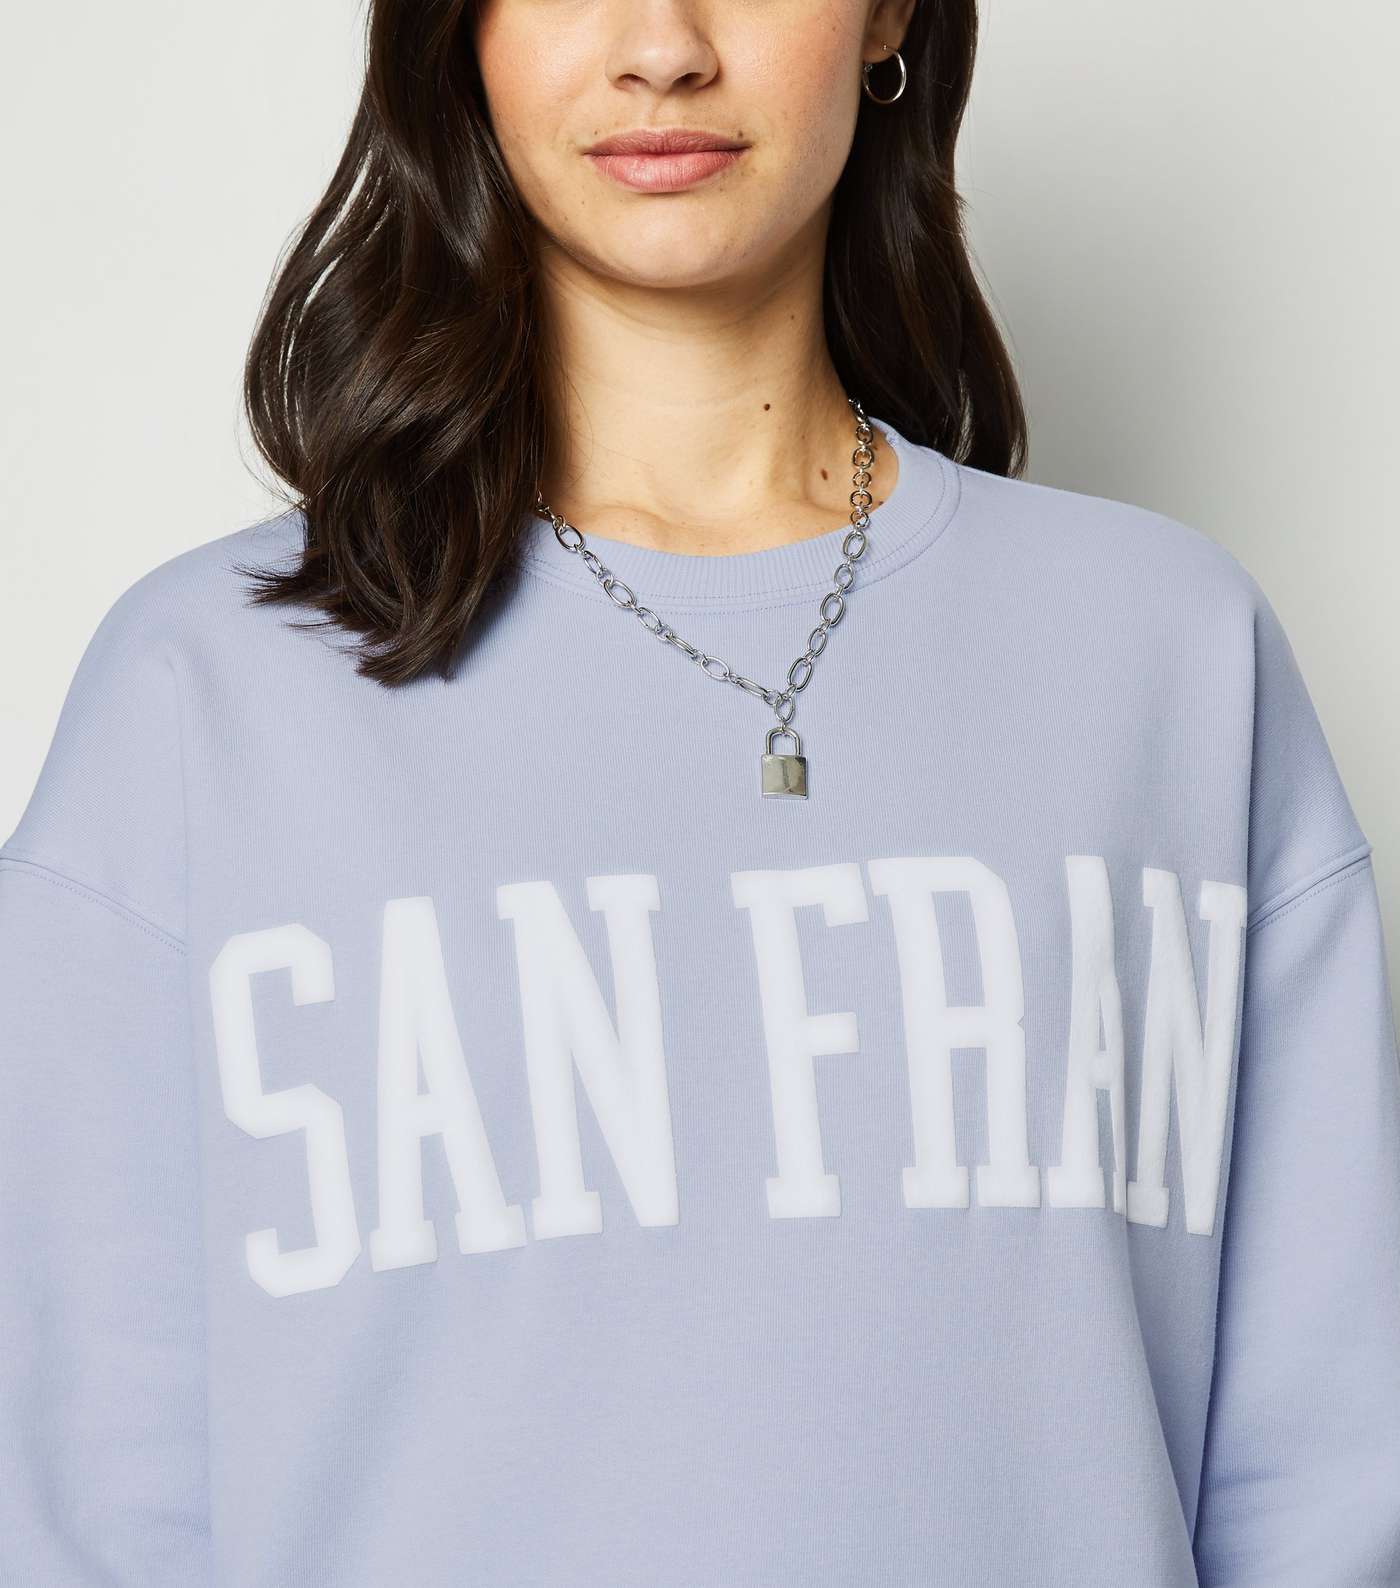 Pale Blue San Fran Logo Sweatshirt Image 5